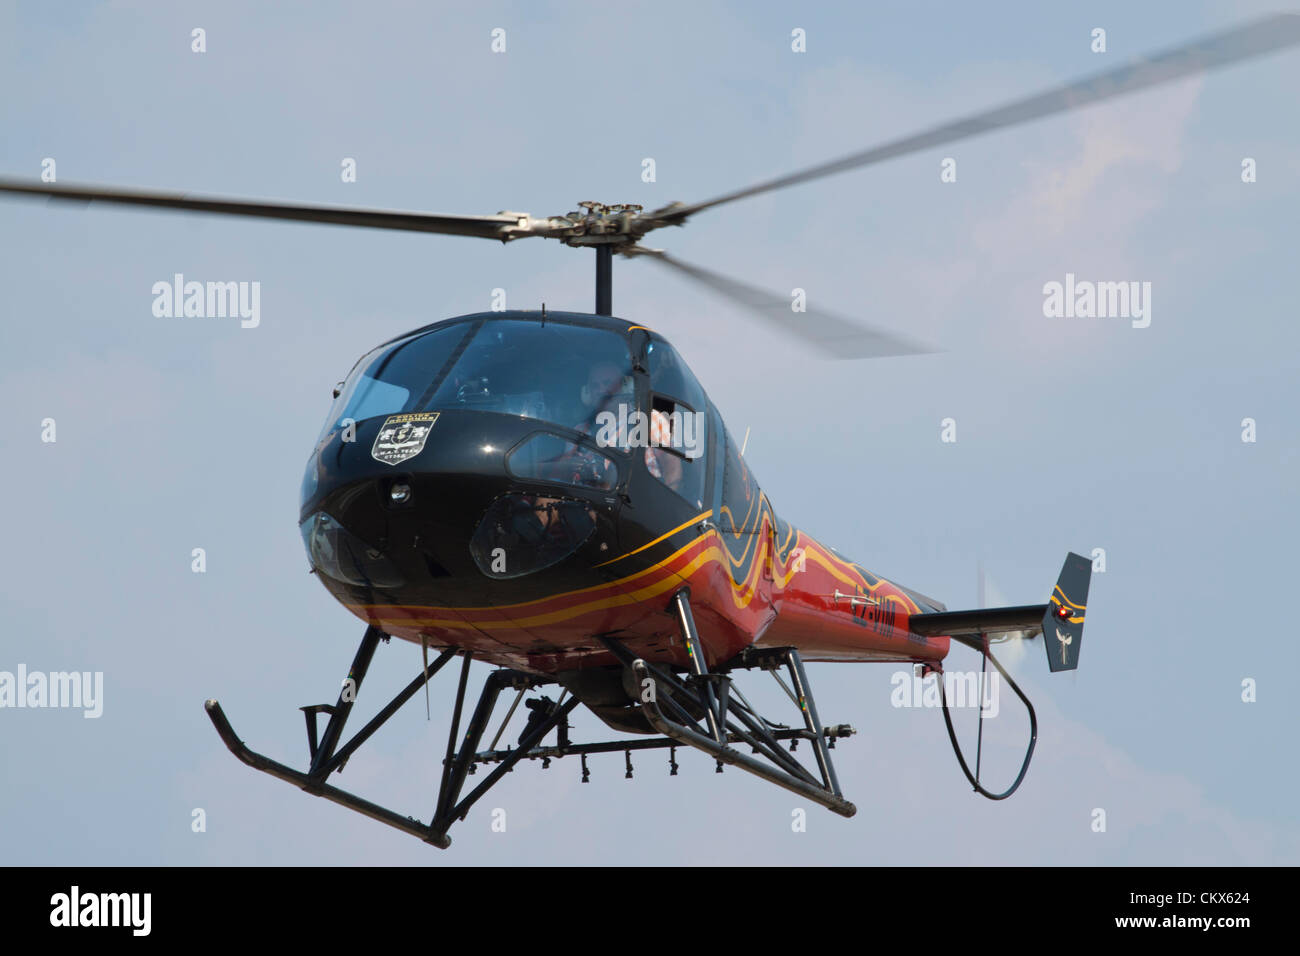 Lesnovo, Bulgarie, 24e Août 2012. Hélicoptère Enstrom 480 lumière planant au-dessus du champ de l'air. Cet avion est équipé comme une récolte duster (notez le rack des buses de pulvérisation sous le fuselage). Credit : Johann Brandstatter / Alamy Live News Banque D'Images